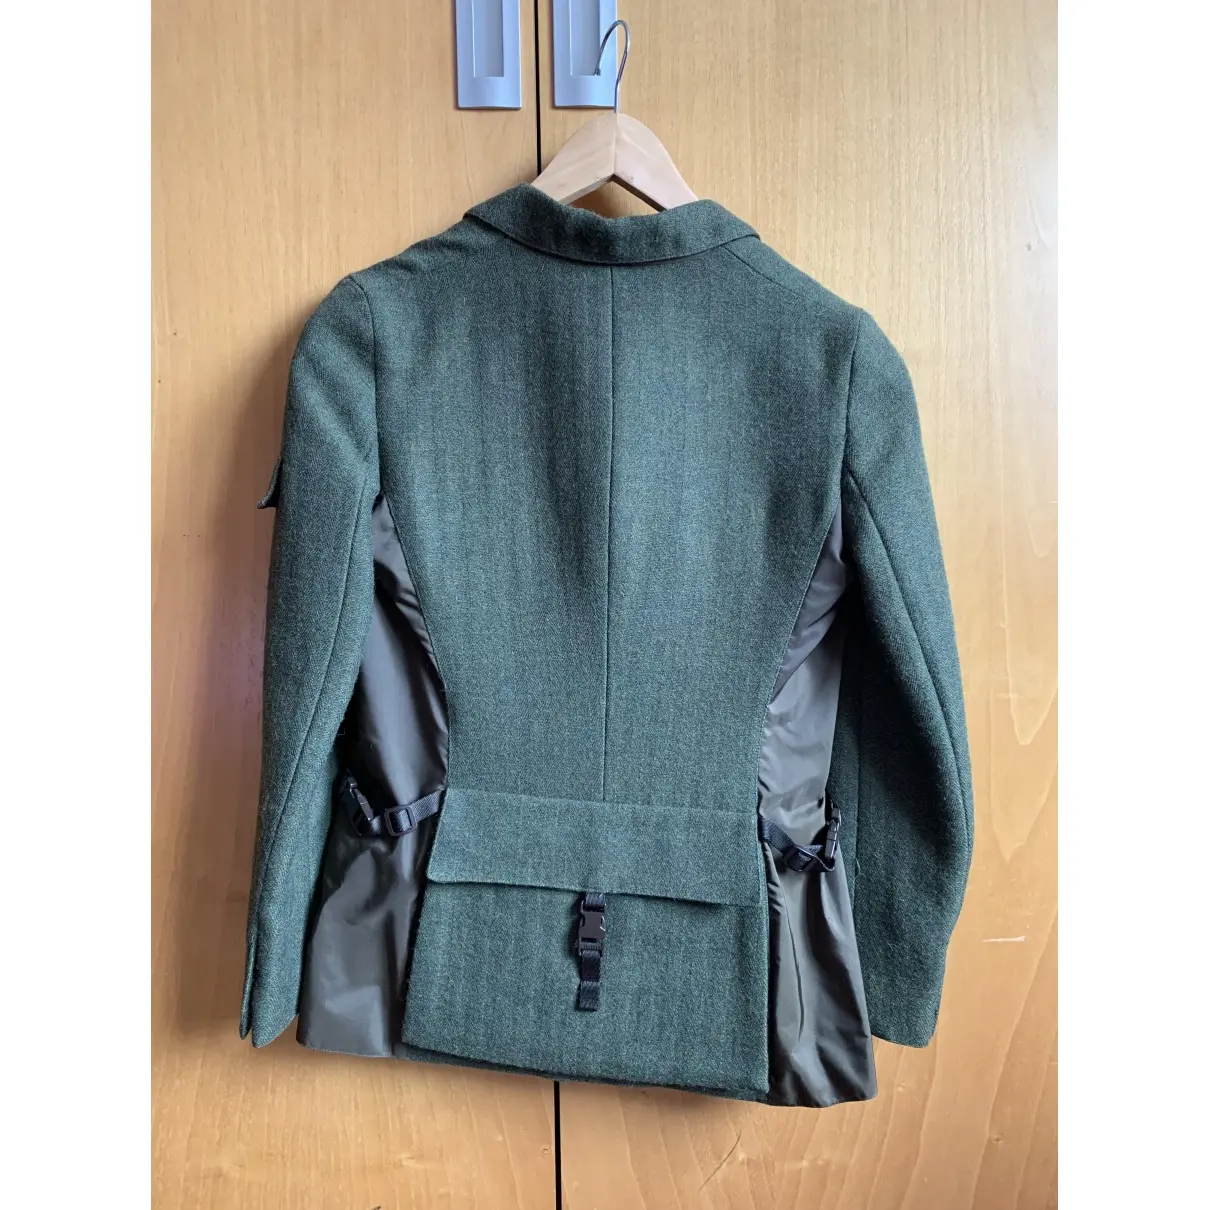 Buy Miu Miu Tweed suit jacket online - Vintage